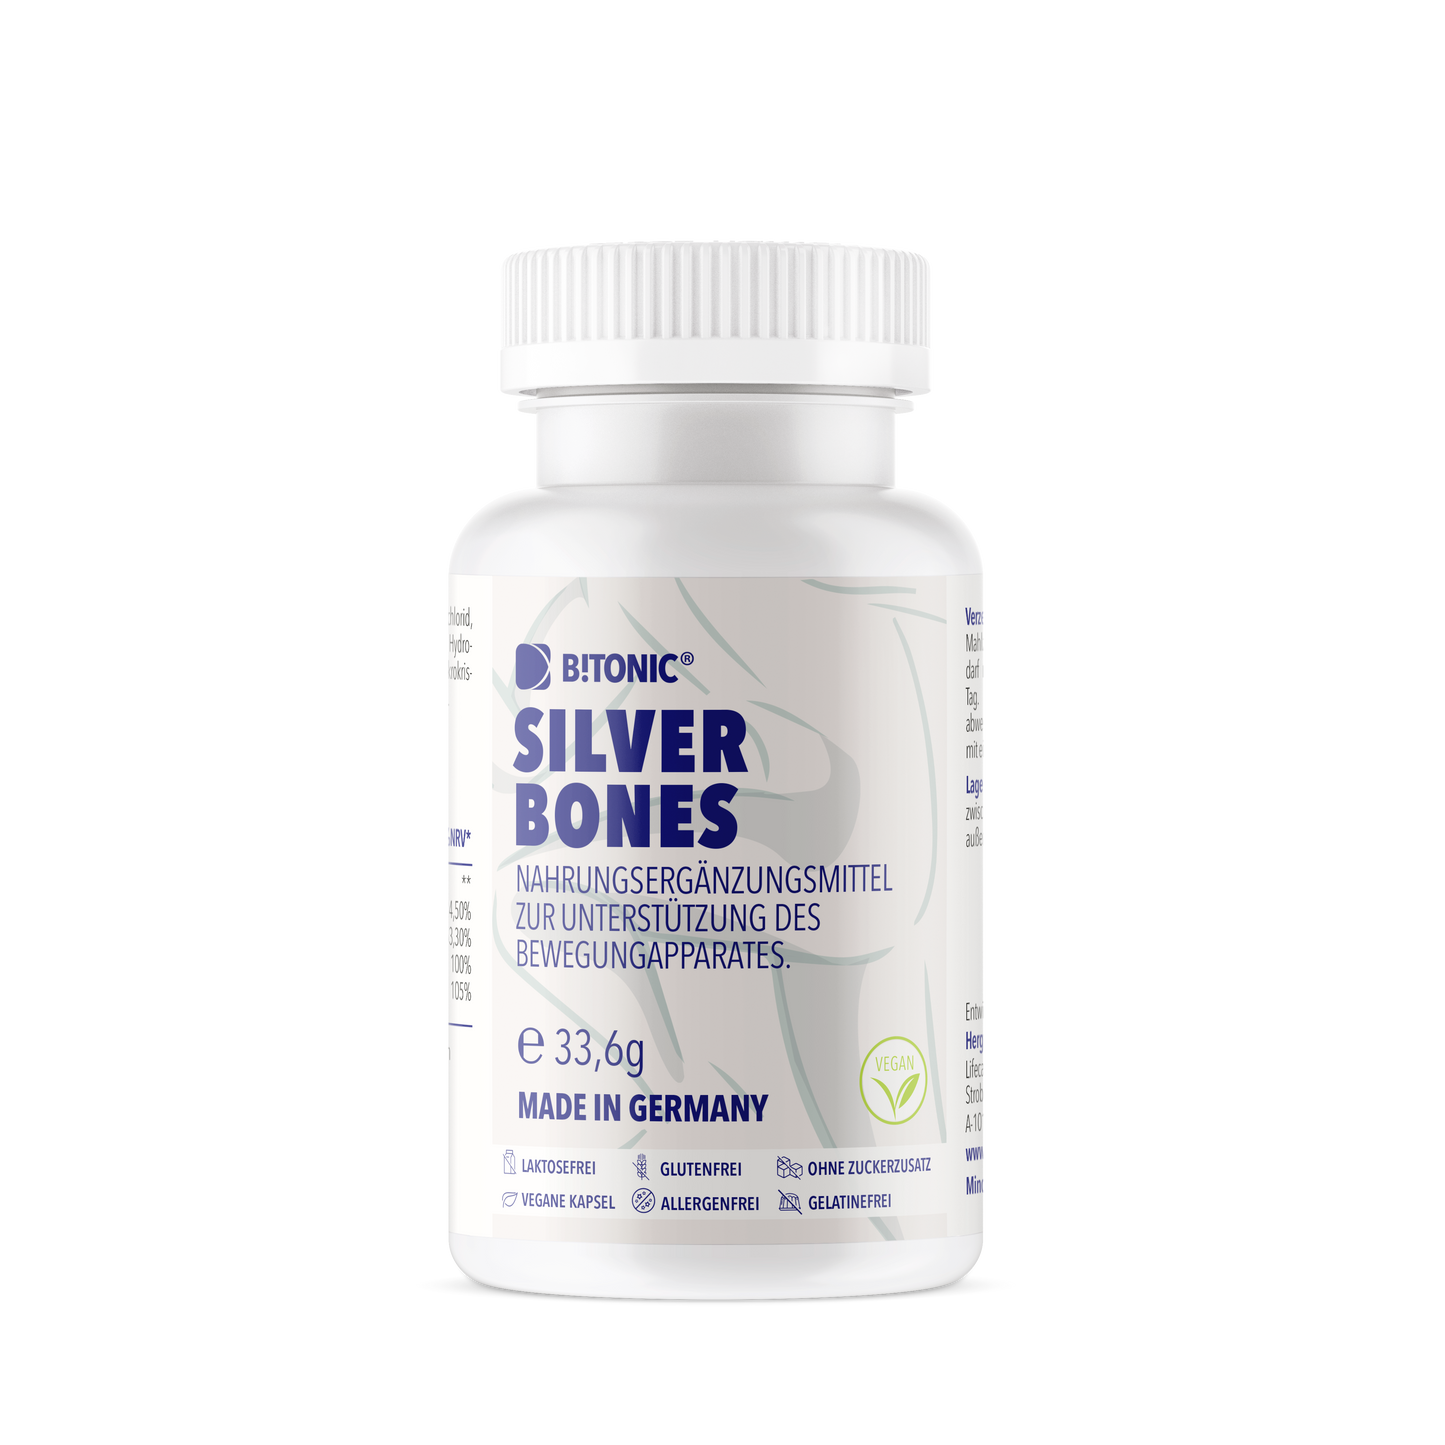 B!TONIC® Silver Bones - Complex articular natural